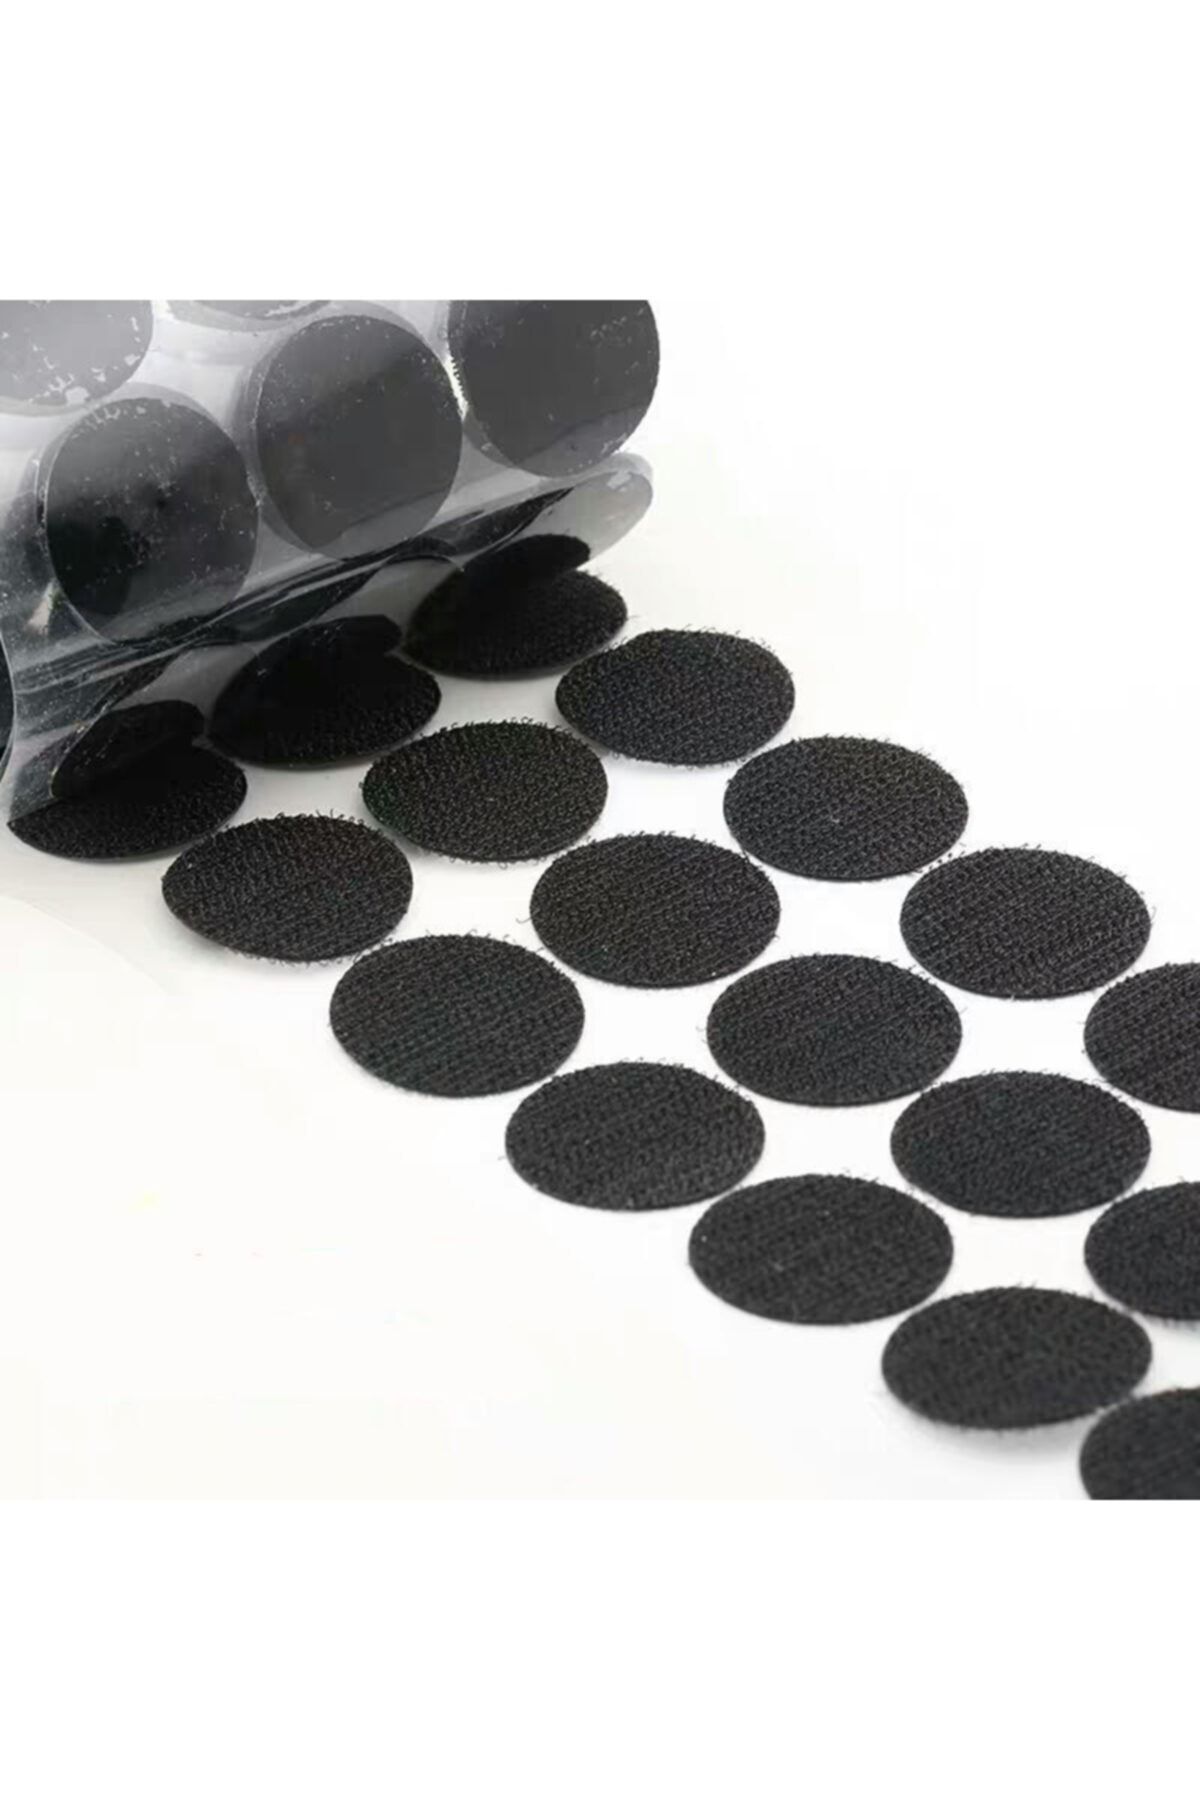 Dünya Magnet 100 Adet Arkası Yapışkanlı Yuvarlak Cırt Cırtlı Bant, Kaliteli Cırt Bant, Çap 1cm, (siyah)